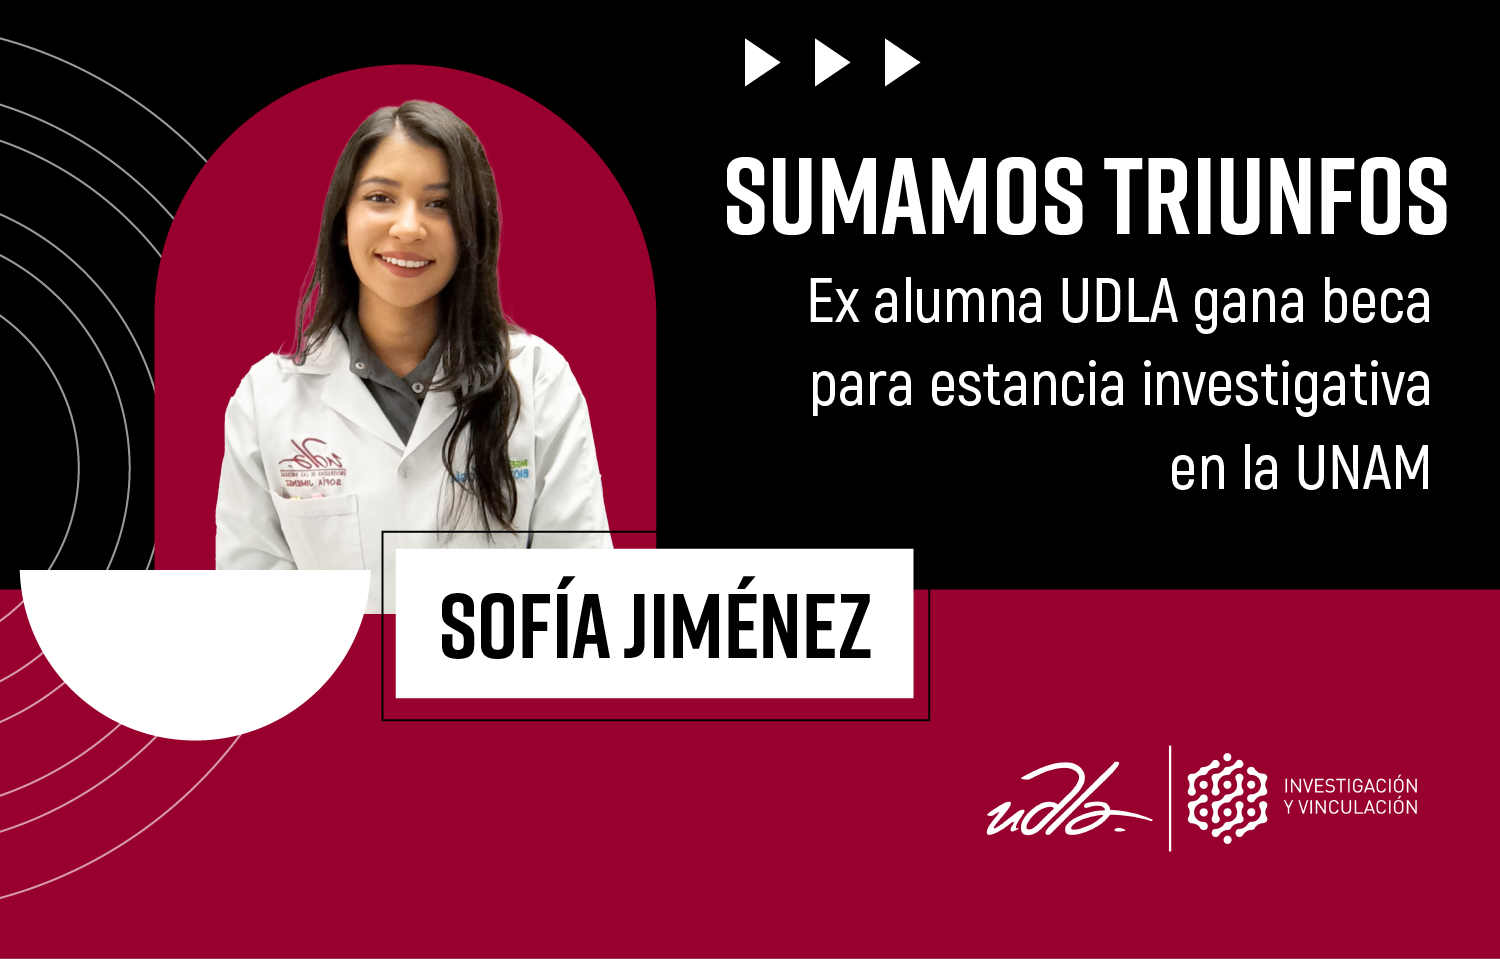 Sumamos triunfos: Ex alumna UDLA gana beca para estancia investigativa en la UNAM